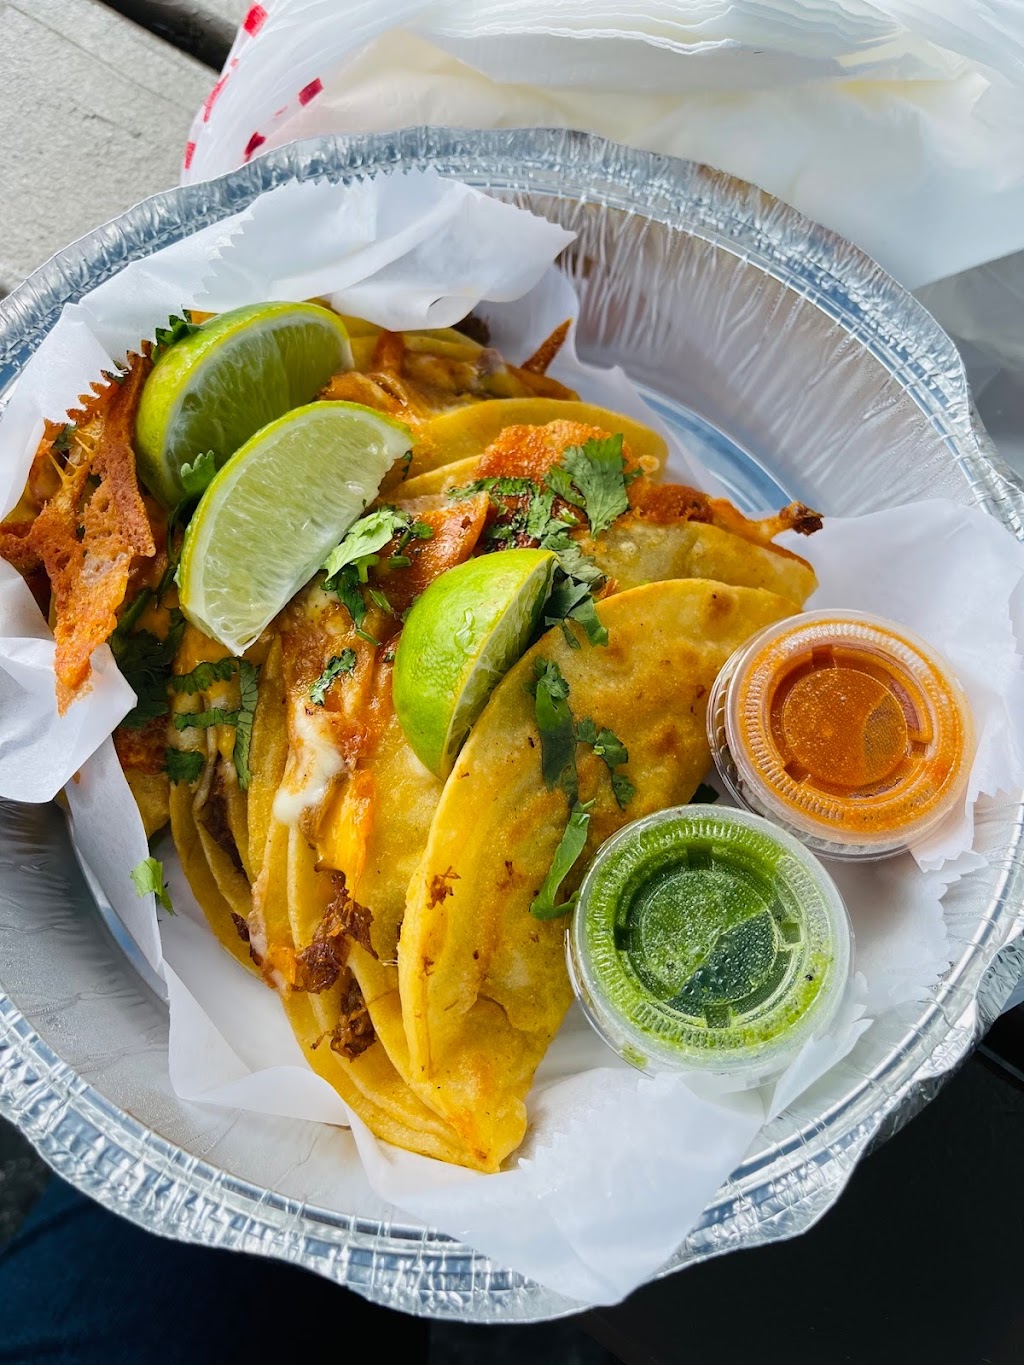 El Sopon Mexican and Salvadoran Food Truck | Elkridge, MD 21075, USA | Phone: (443) 410-9300